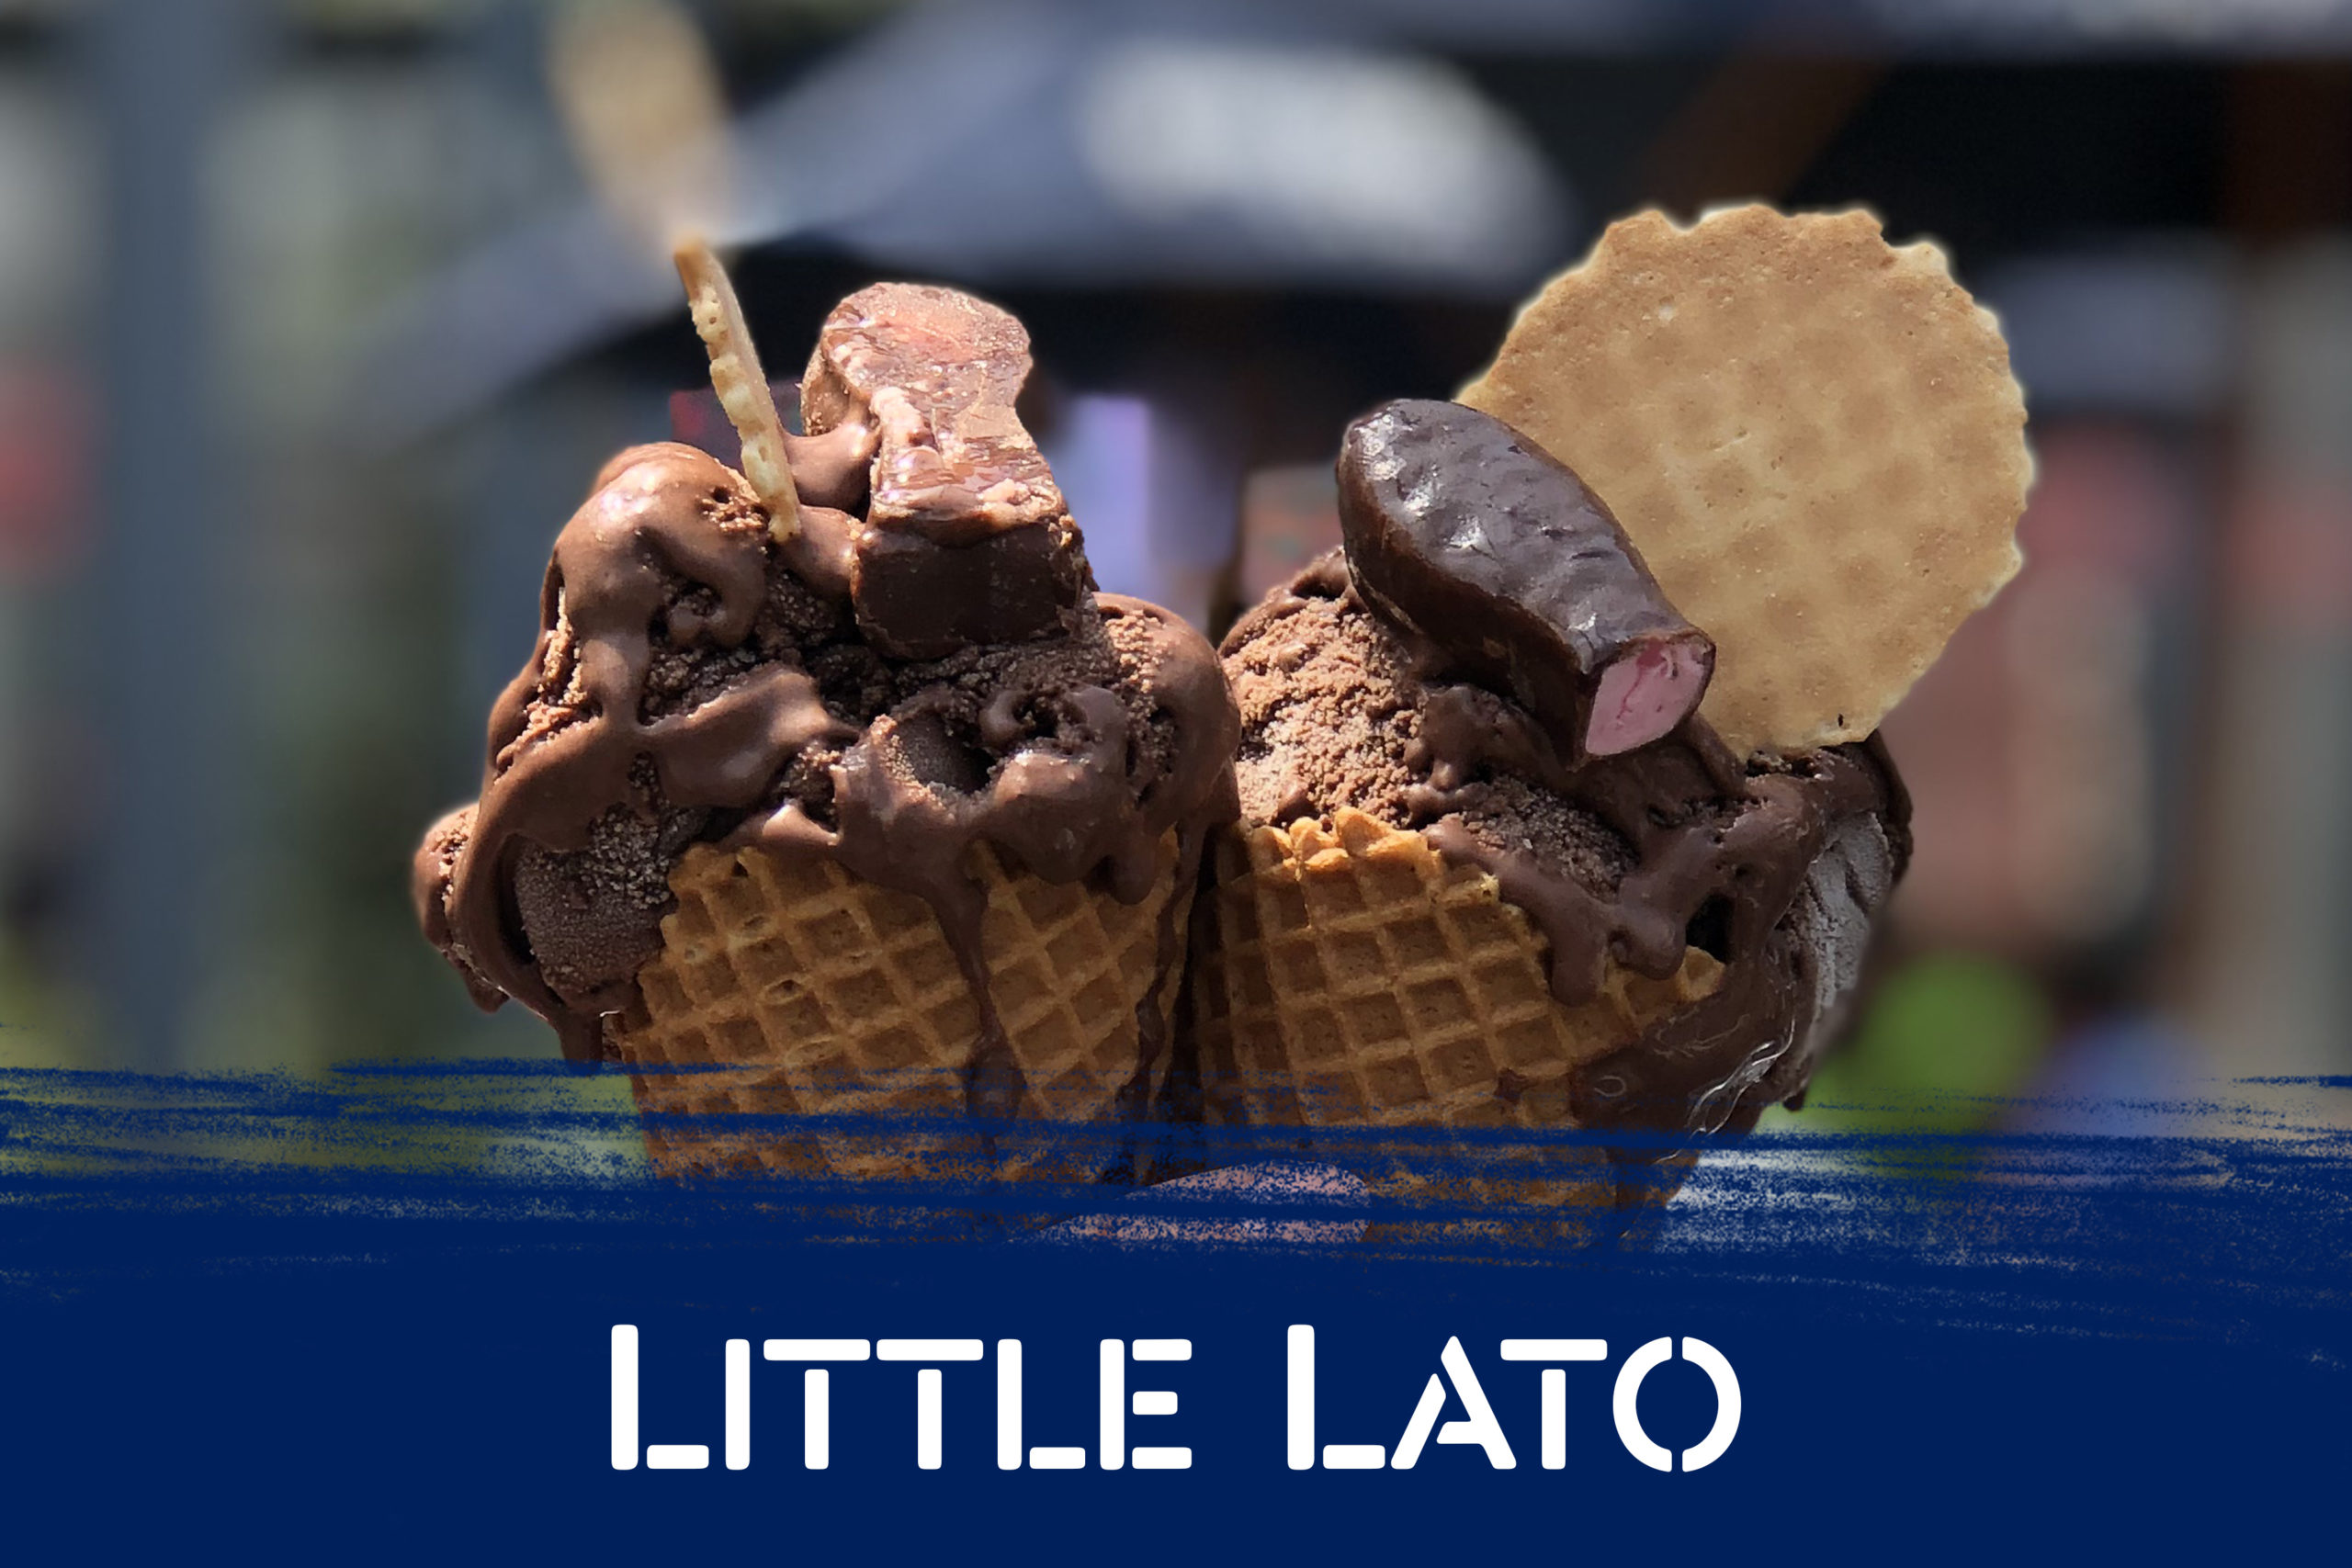 Order Little Lato online